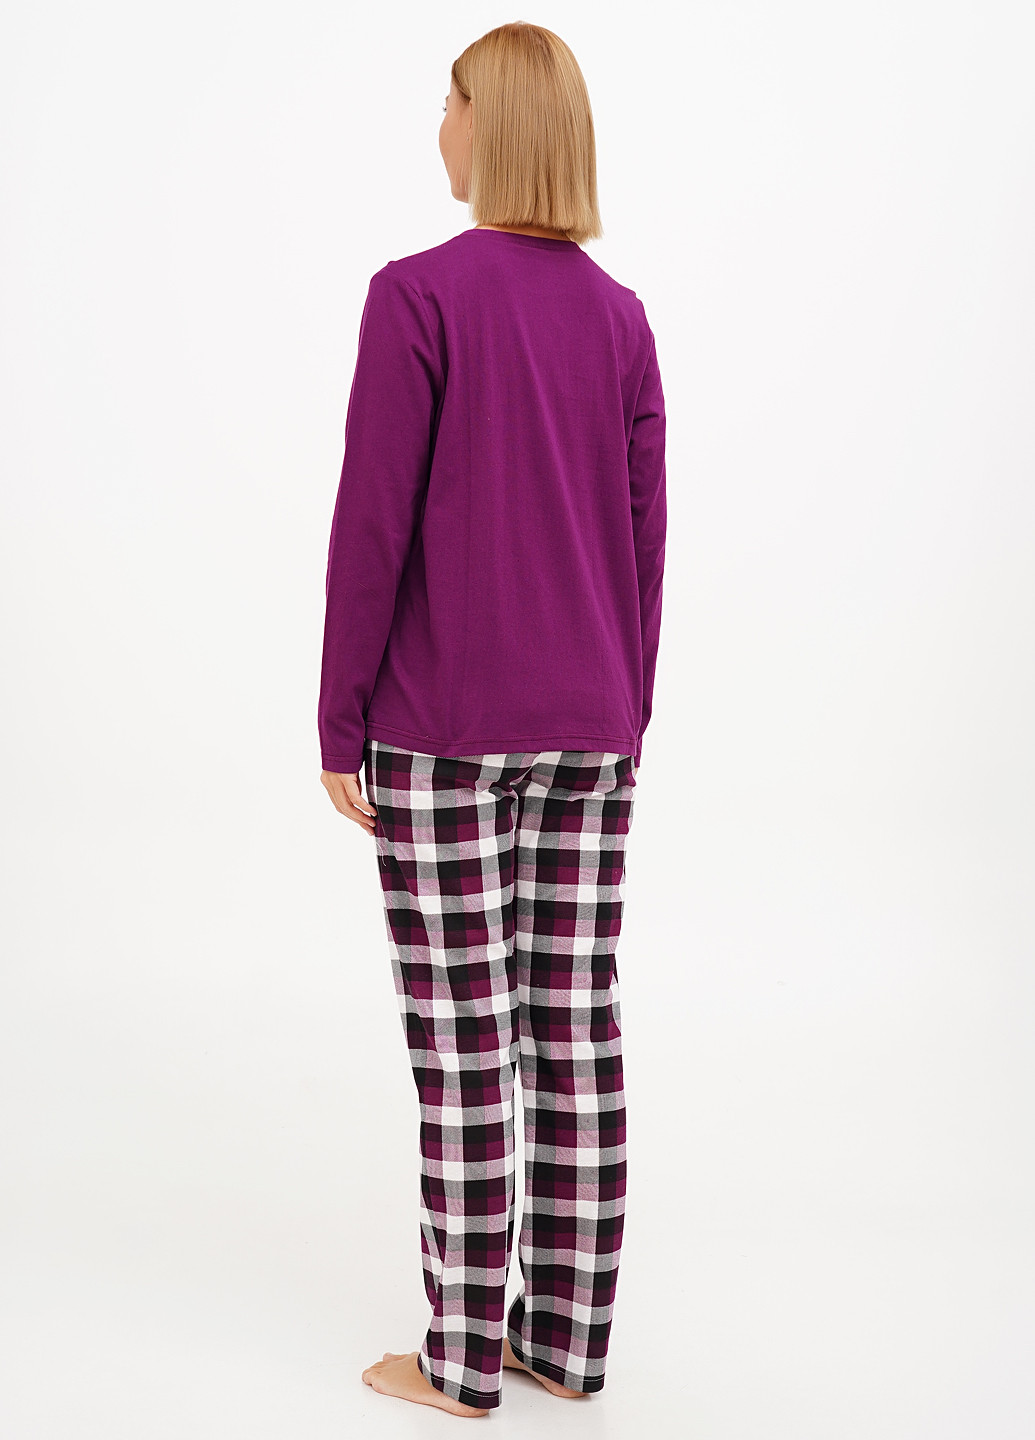 Фуксиновая всесезон пижама (лонгслив, брюки) лонгслив + брюки Aniele